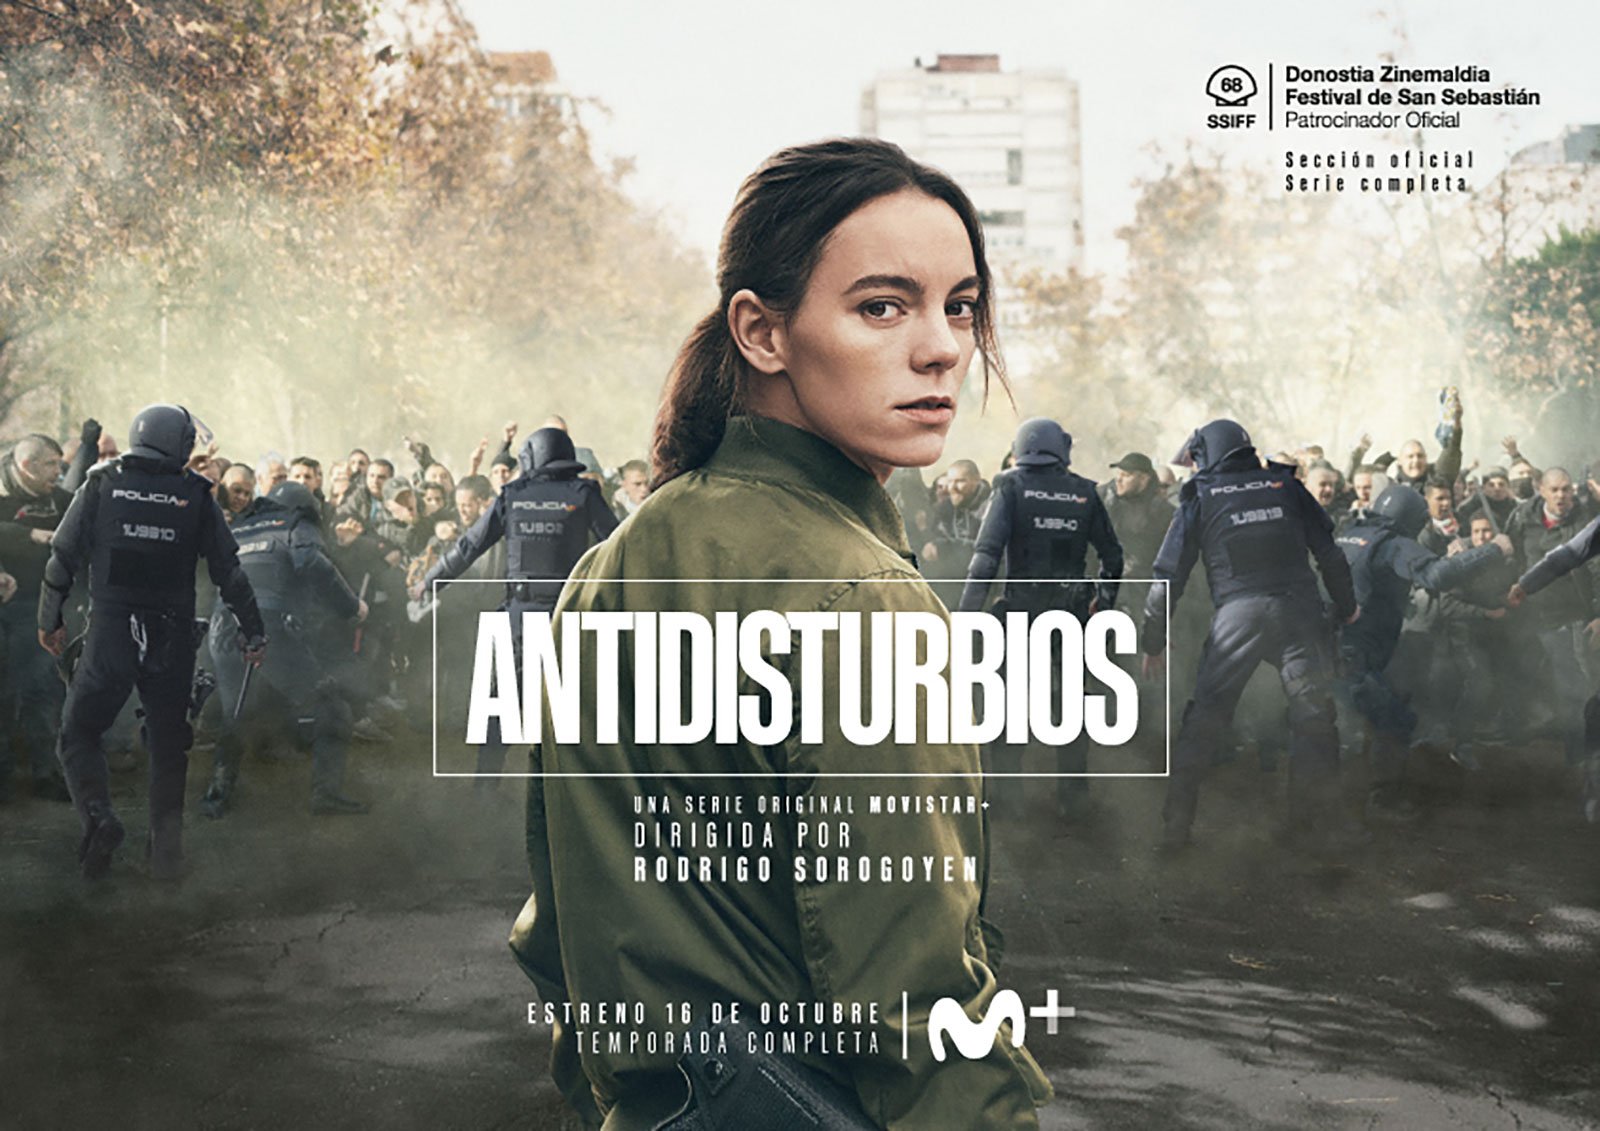 [心得] 防暴警察 Antidisturbios (雷) Movistar+ 西班牙警政劇 2020